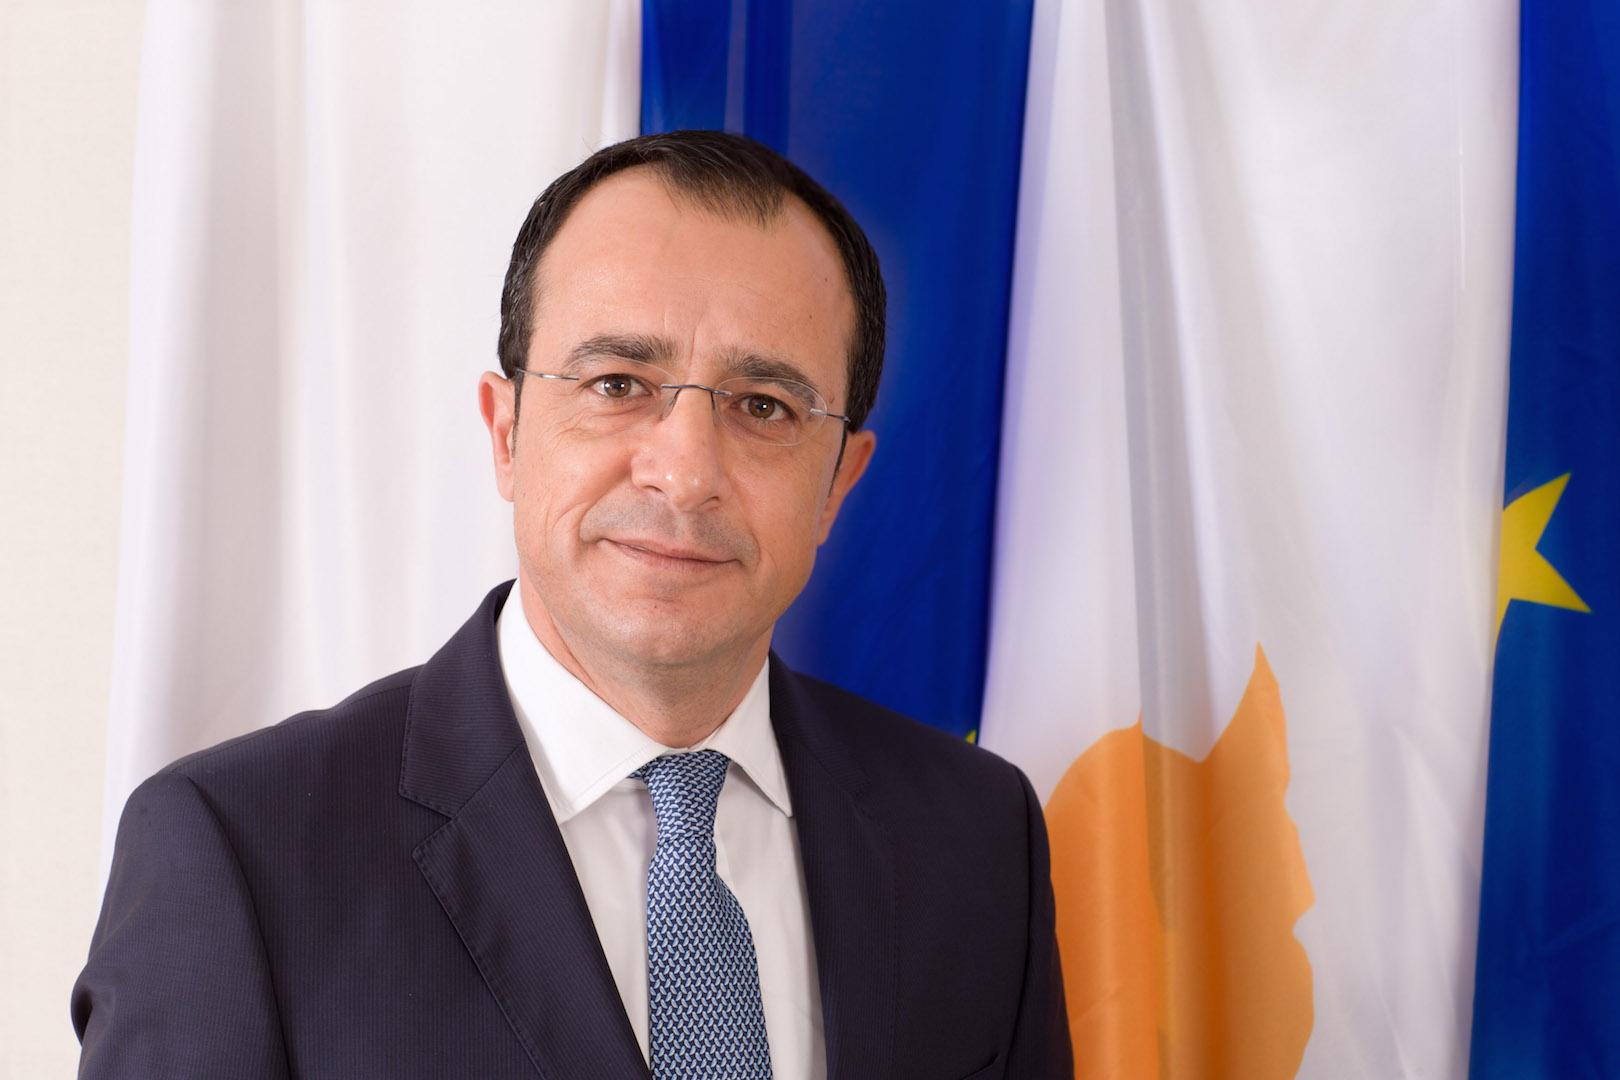 Κύπρος: Ανακοινώθηκε η κυβέρνηση Χριστοδουλίδη - Υφυπουργός Πολιτισμού ο Μιχάλης Χατζηγιάννης